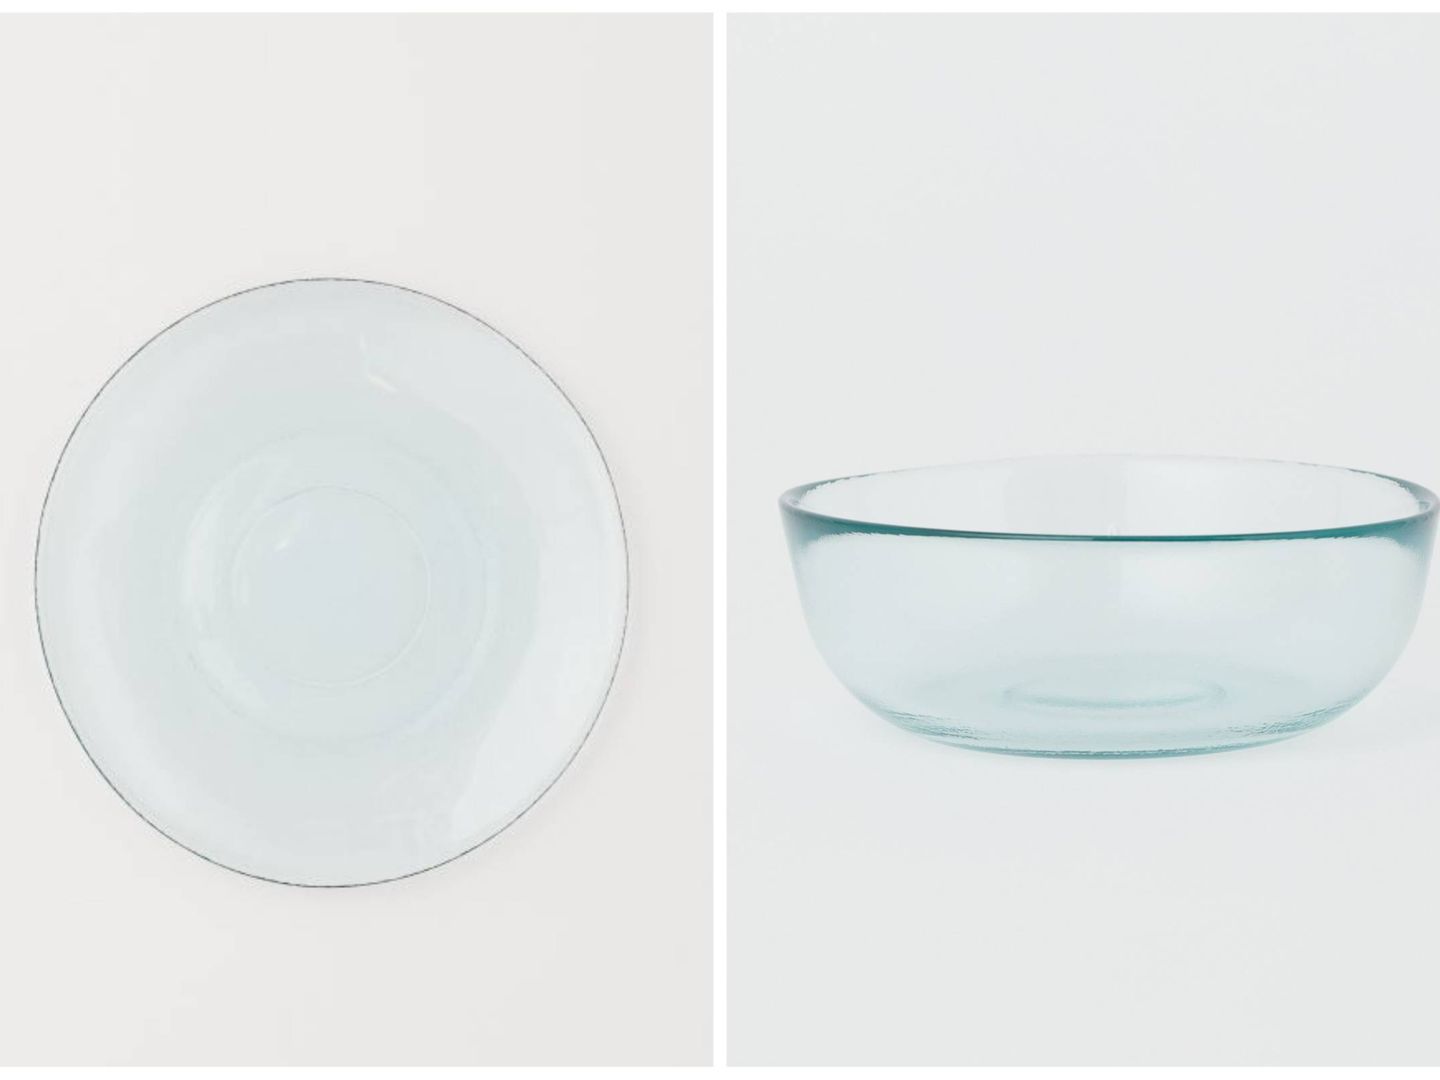 Nuevos diseños de vidrio reciclado de HyM Home. (Cortesía)